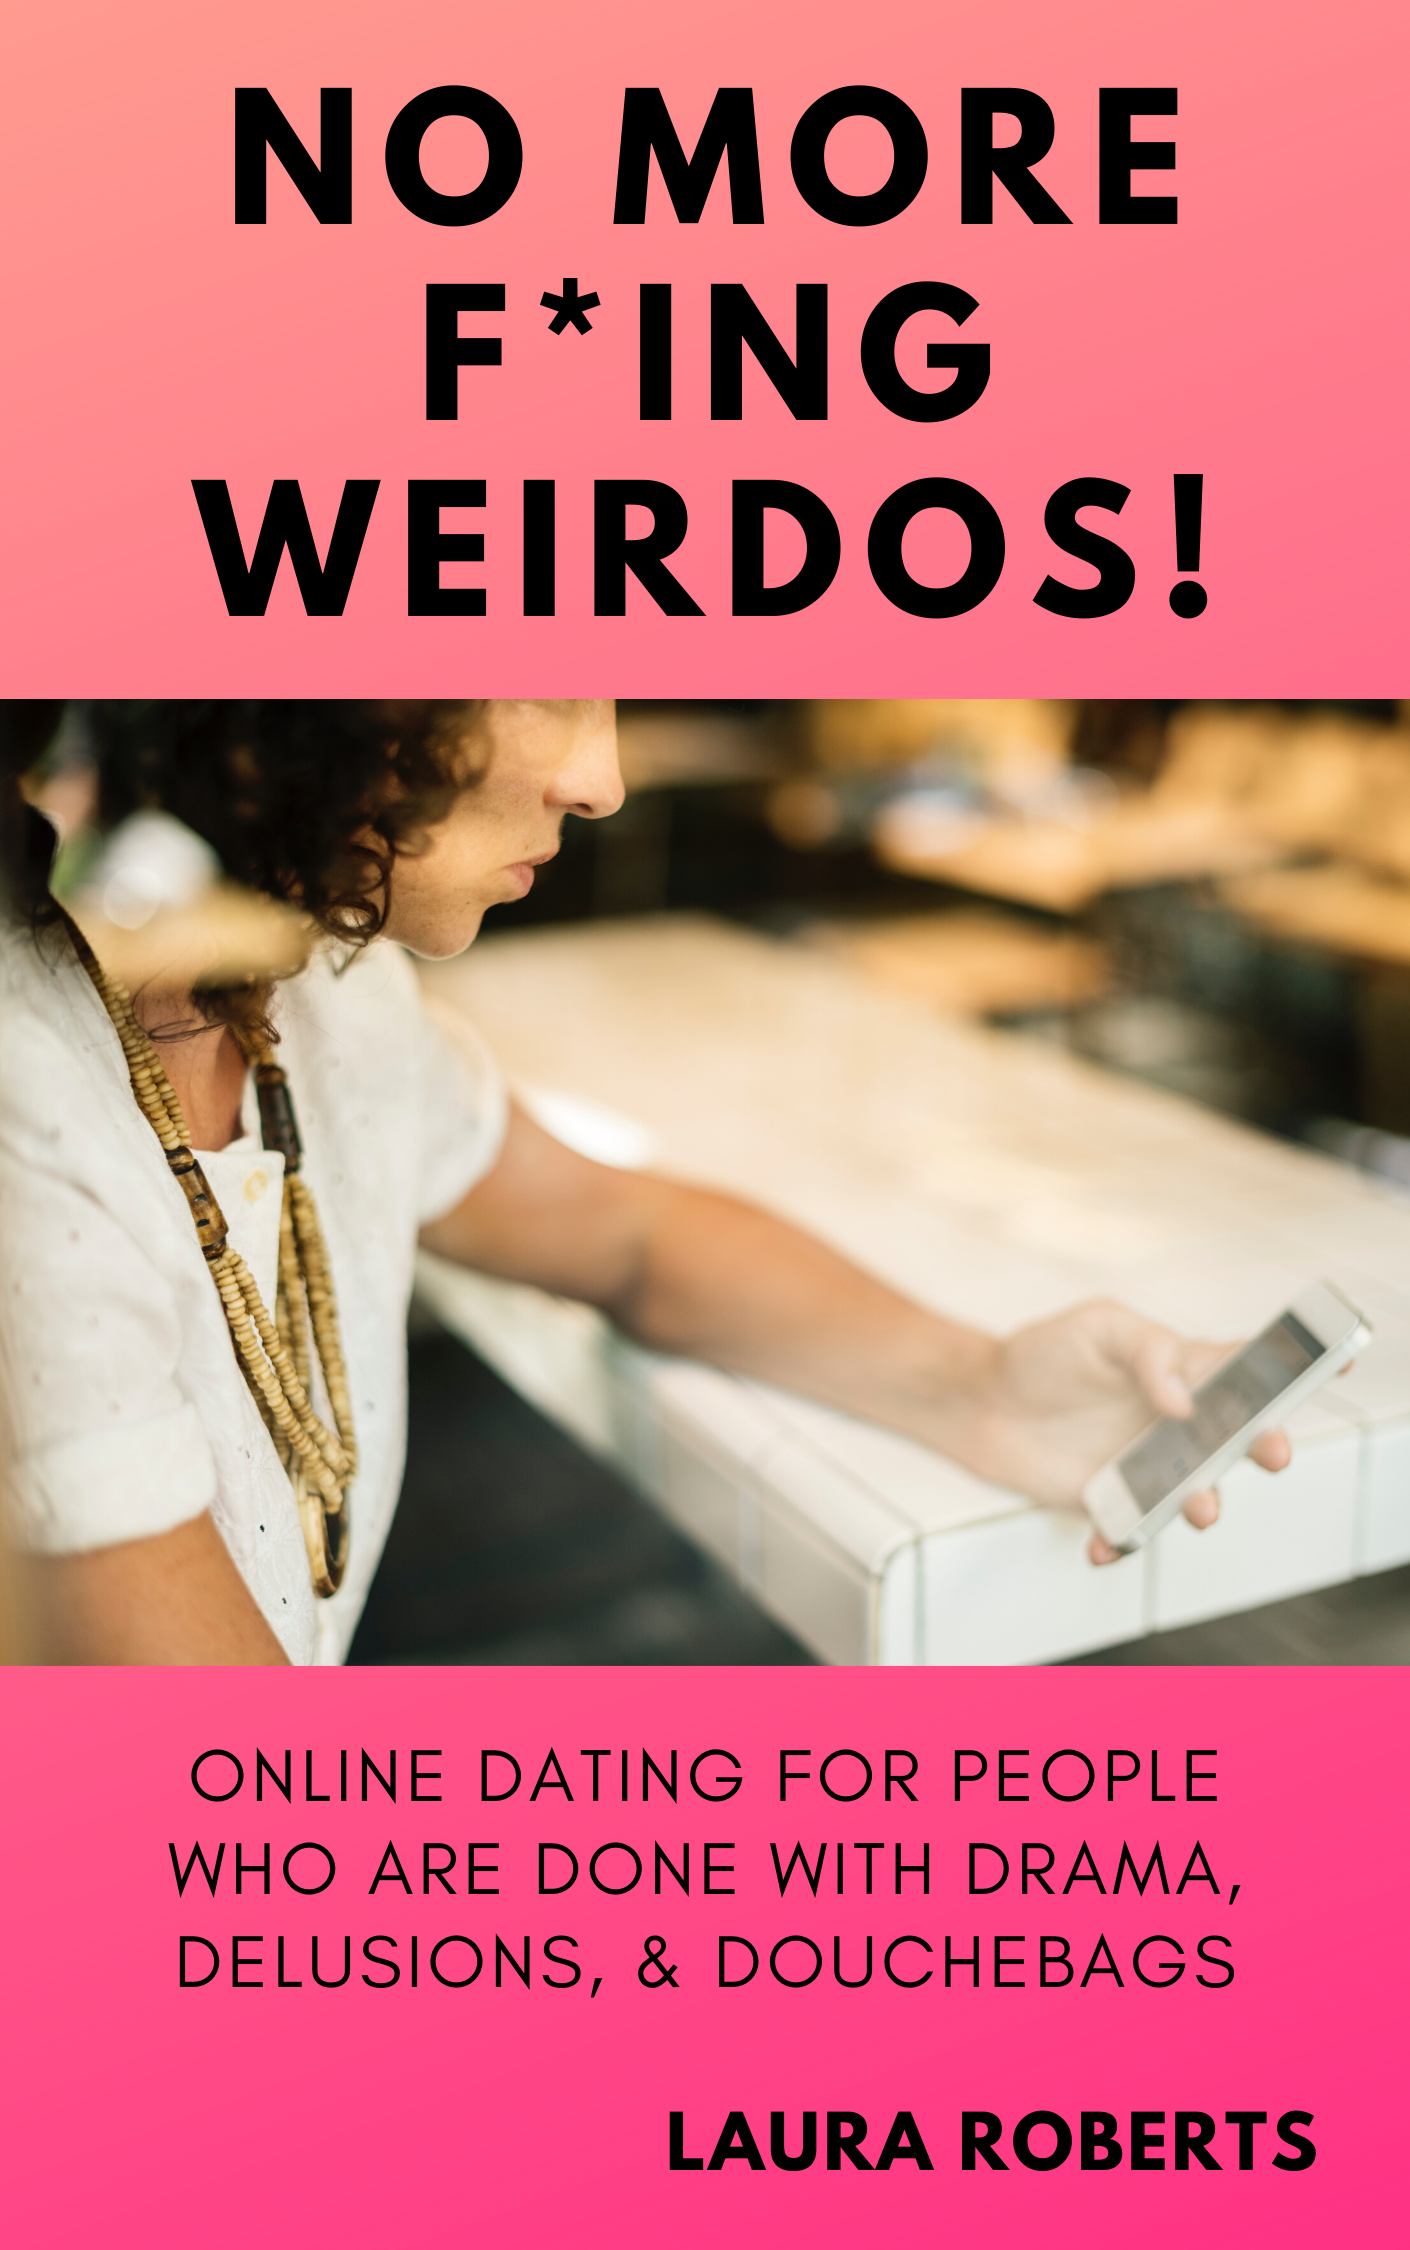 Dating for Weirdos